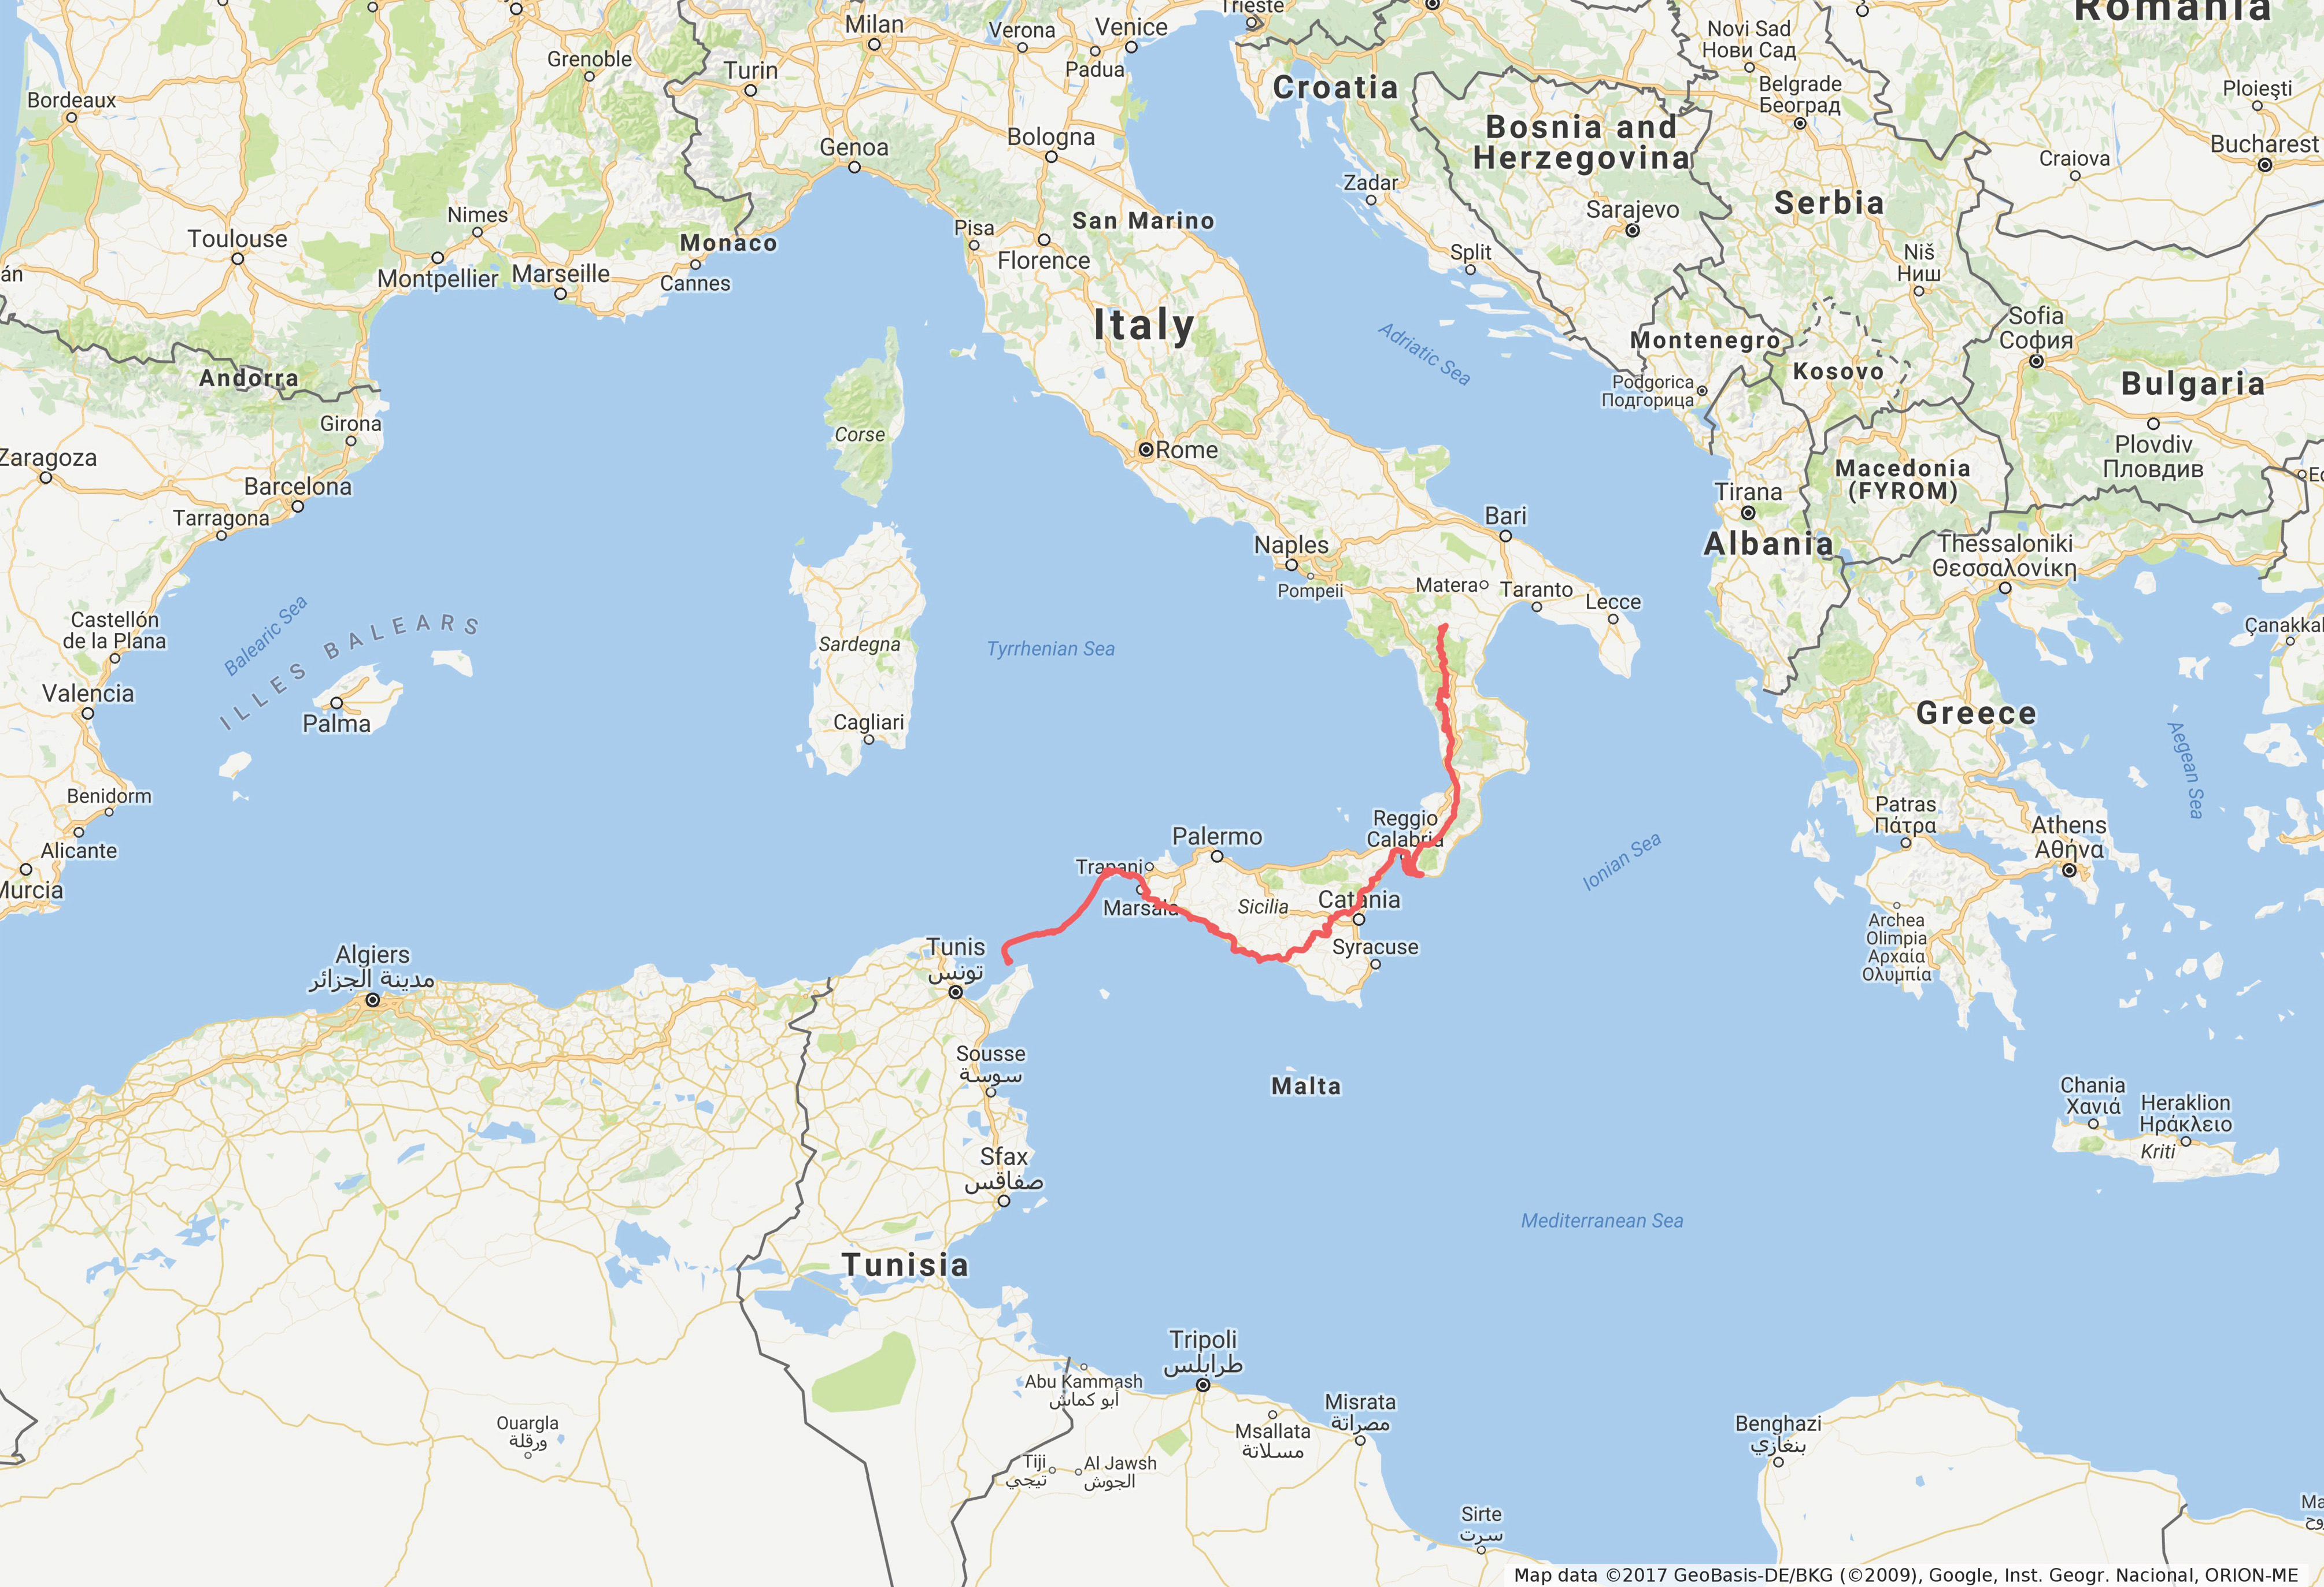 Il percorso di Apollo per raggiungere l’Isola di Zembra in Tunisia.